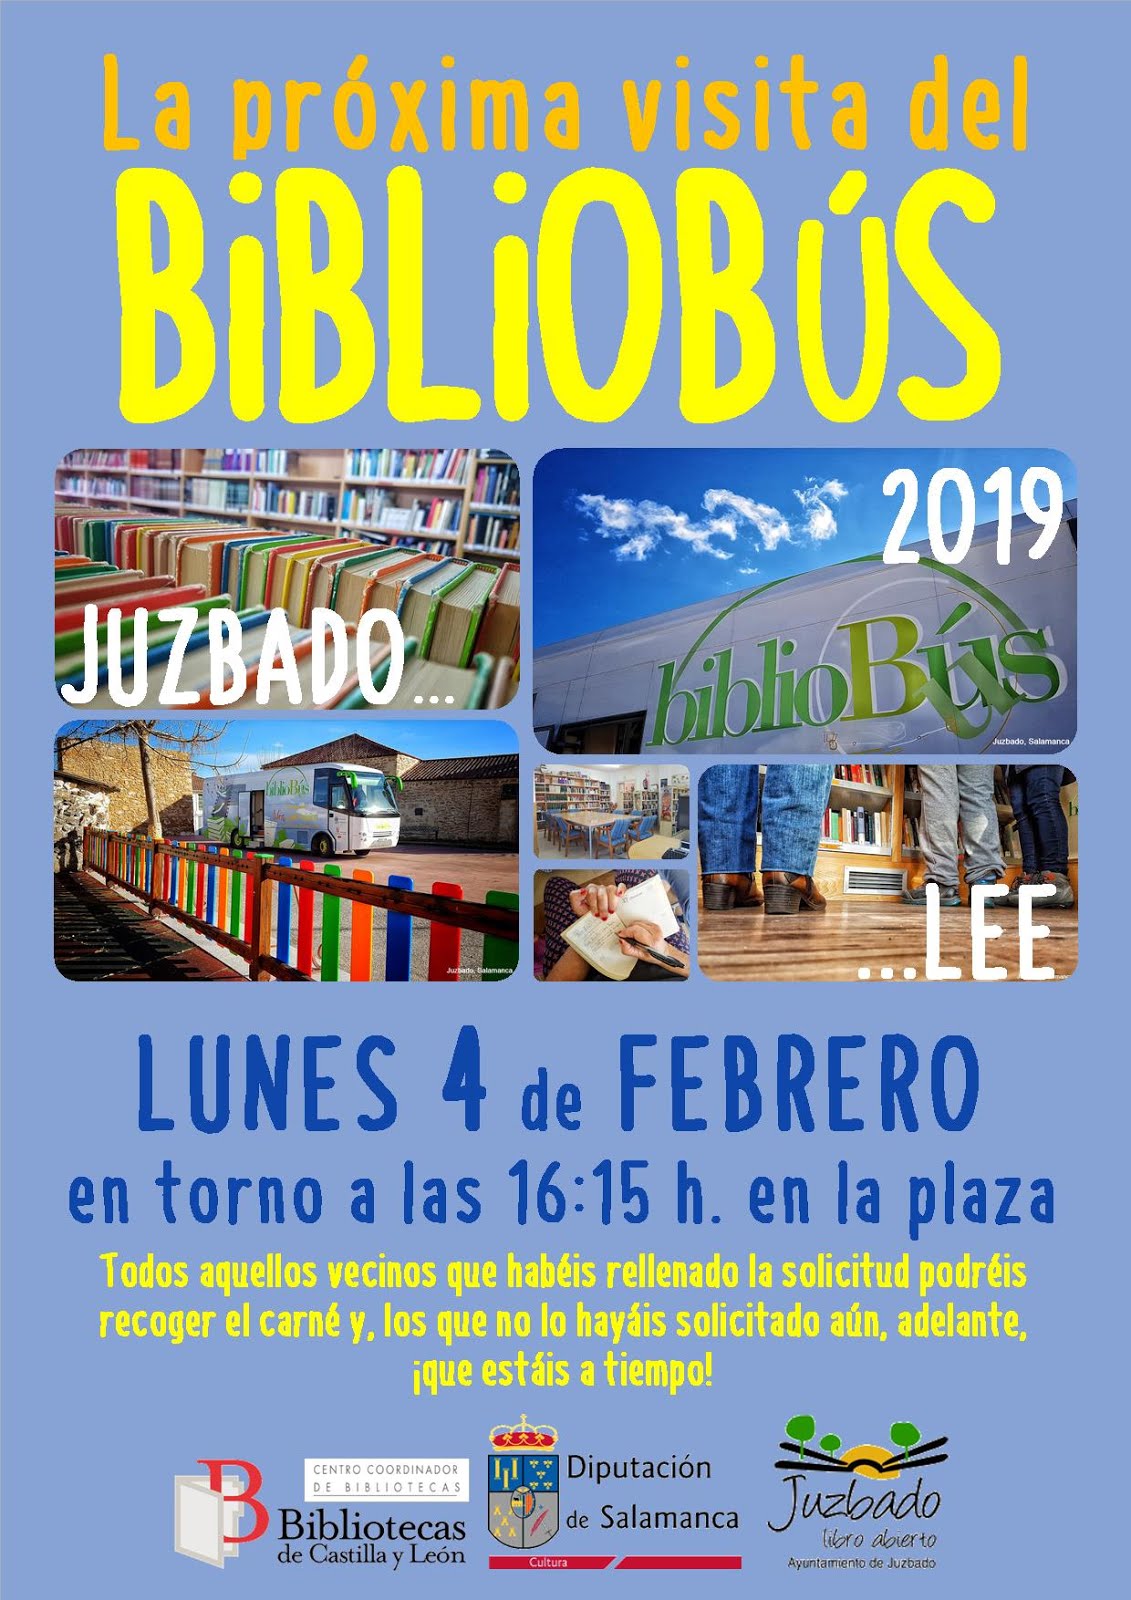 Visita del bibliobús febrero 2019 - Juzbado (Salamanca)